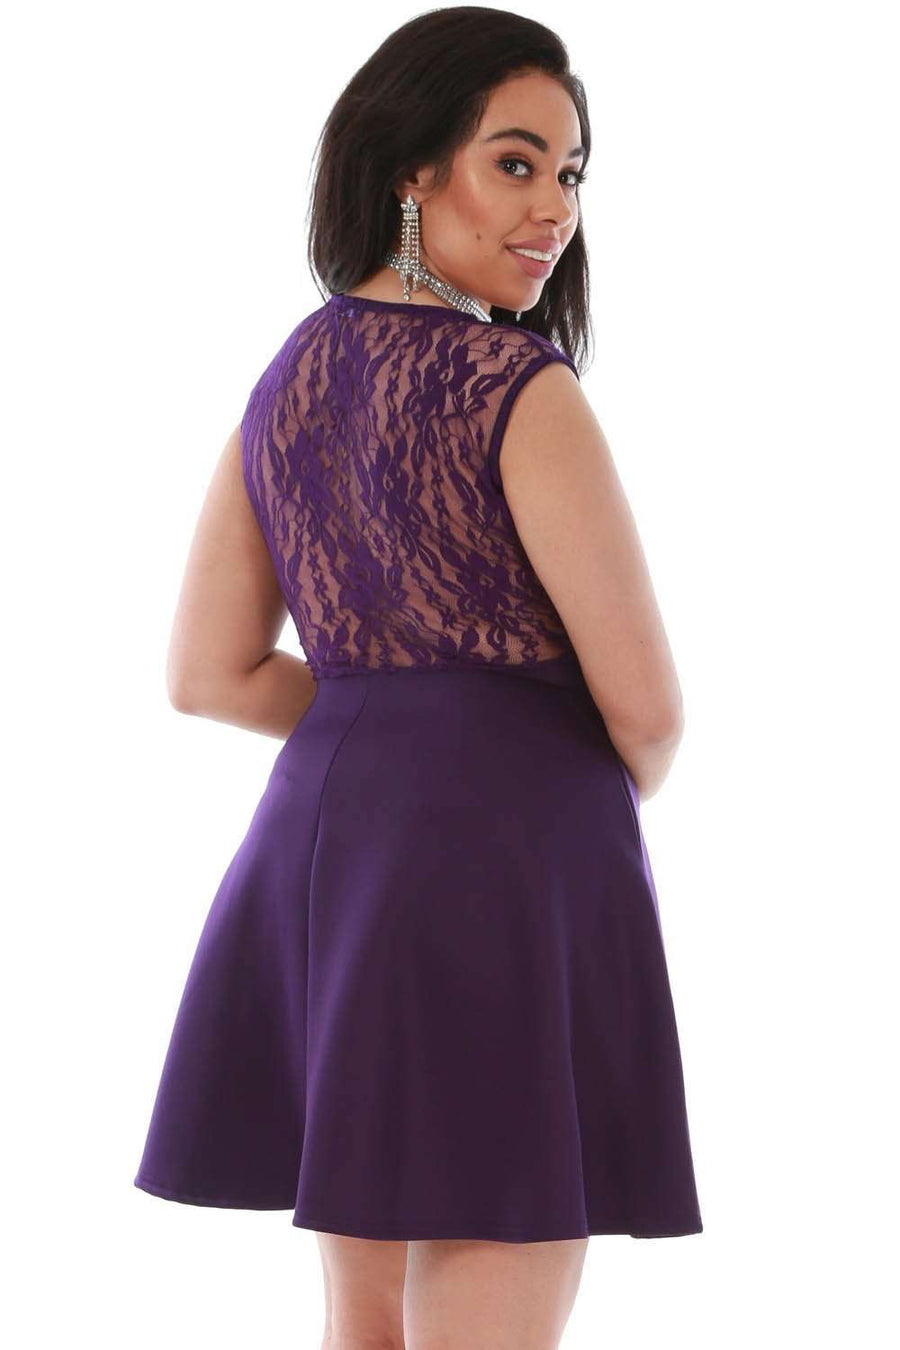 Plus Size Sleeveless Lace Mini Skater Dress - bejealous-com